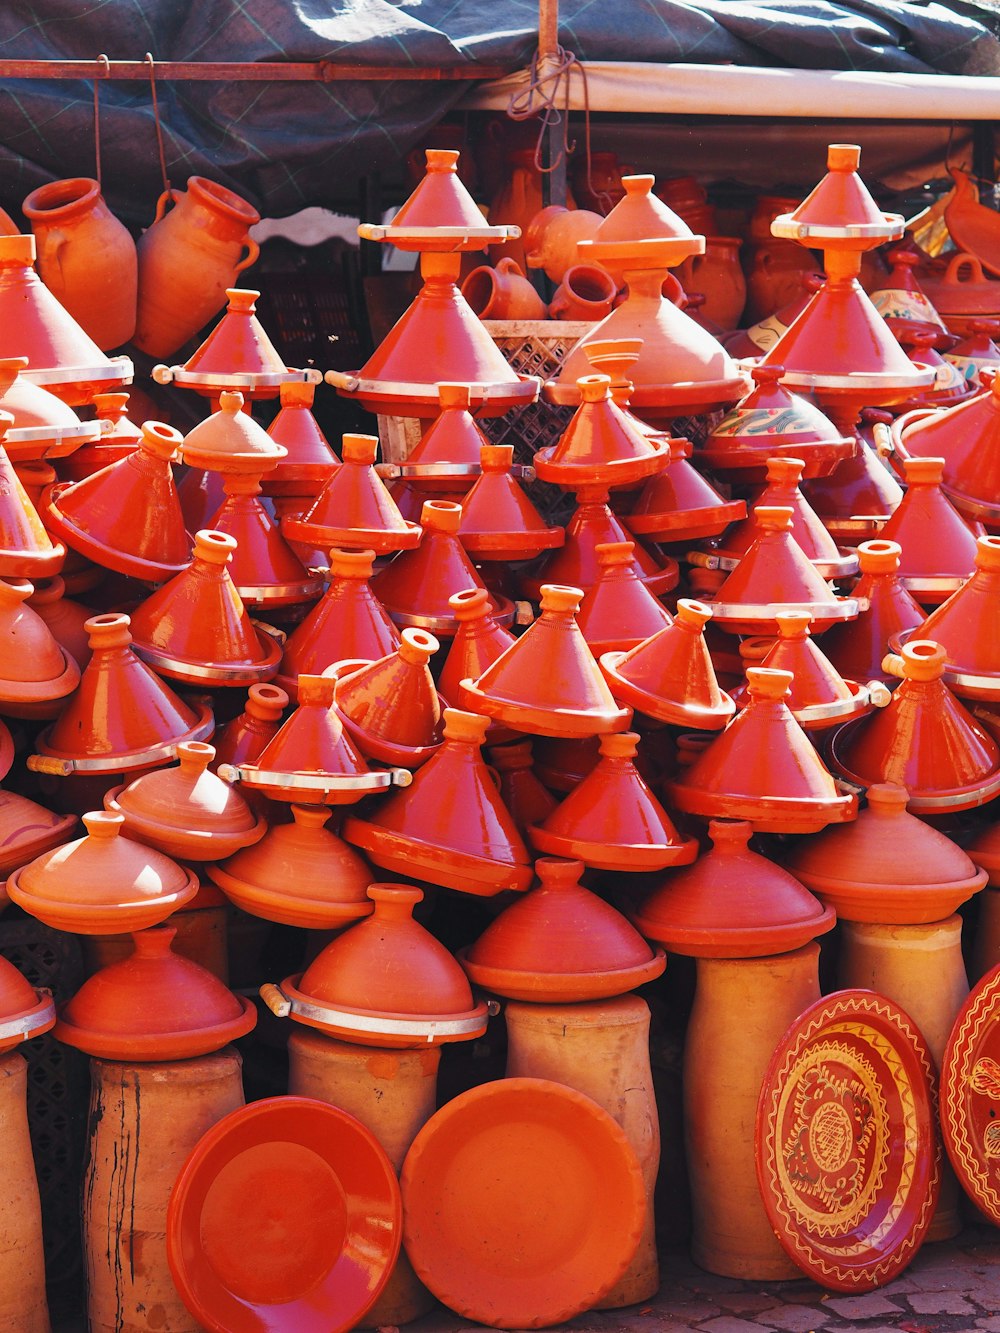 Viele orangefarbene Vasen, die ausgestellt sind